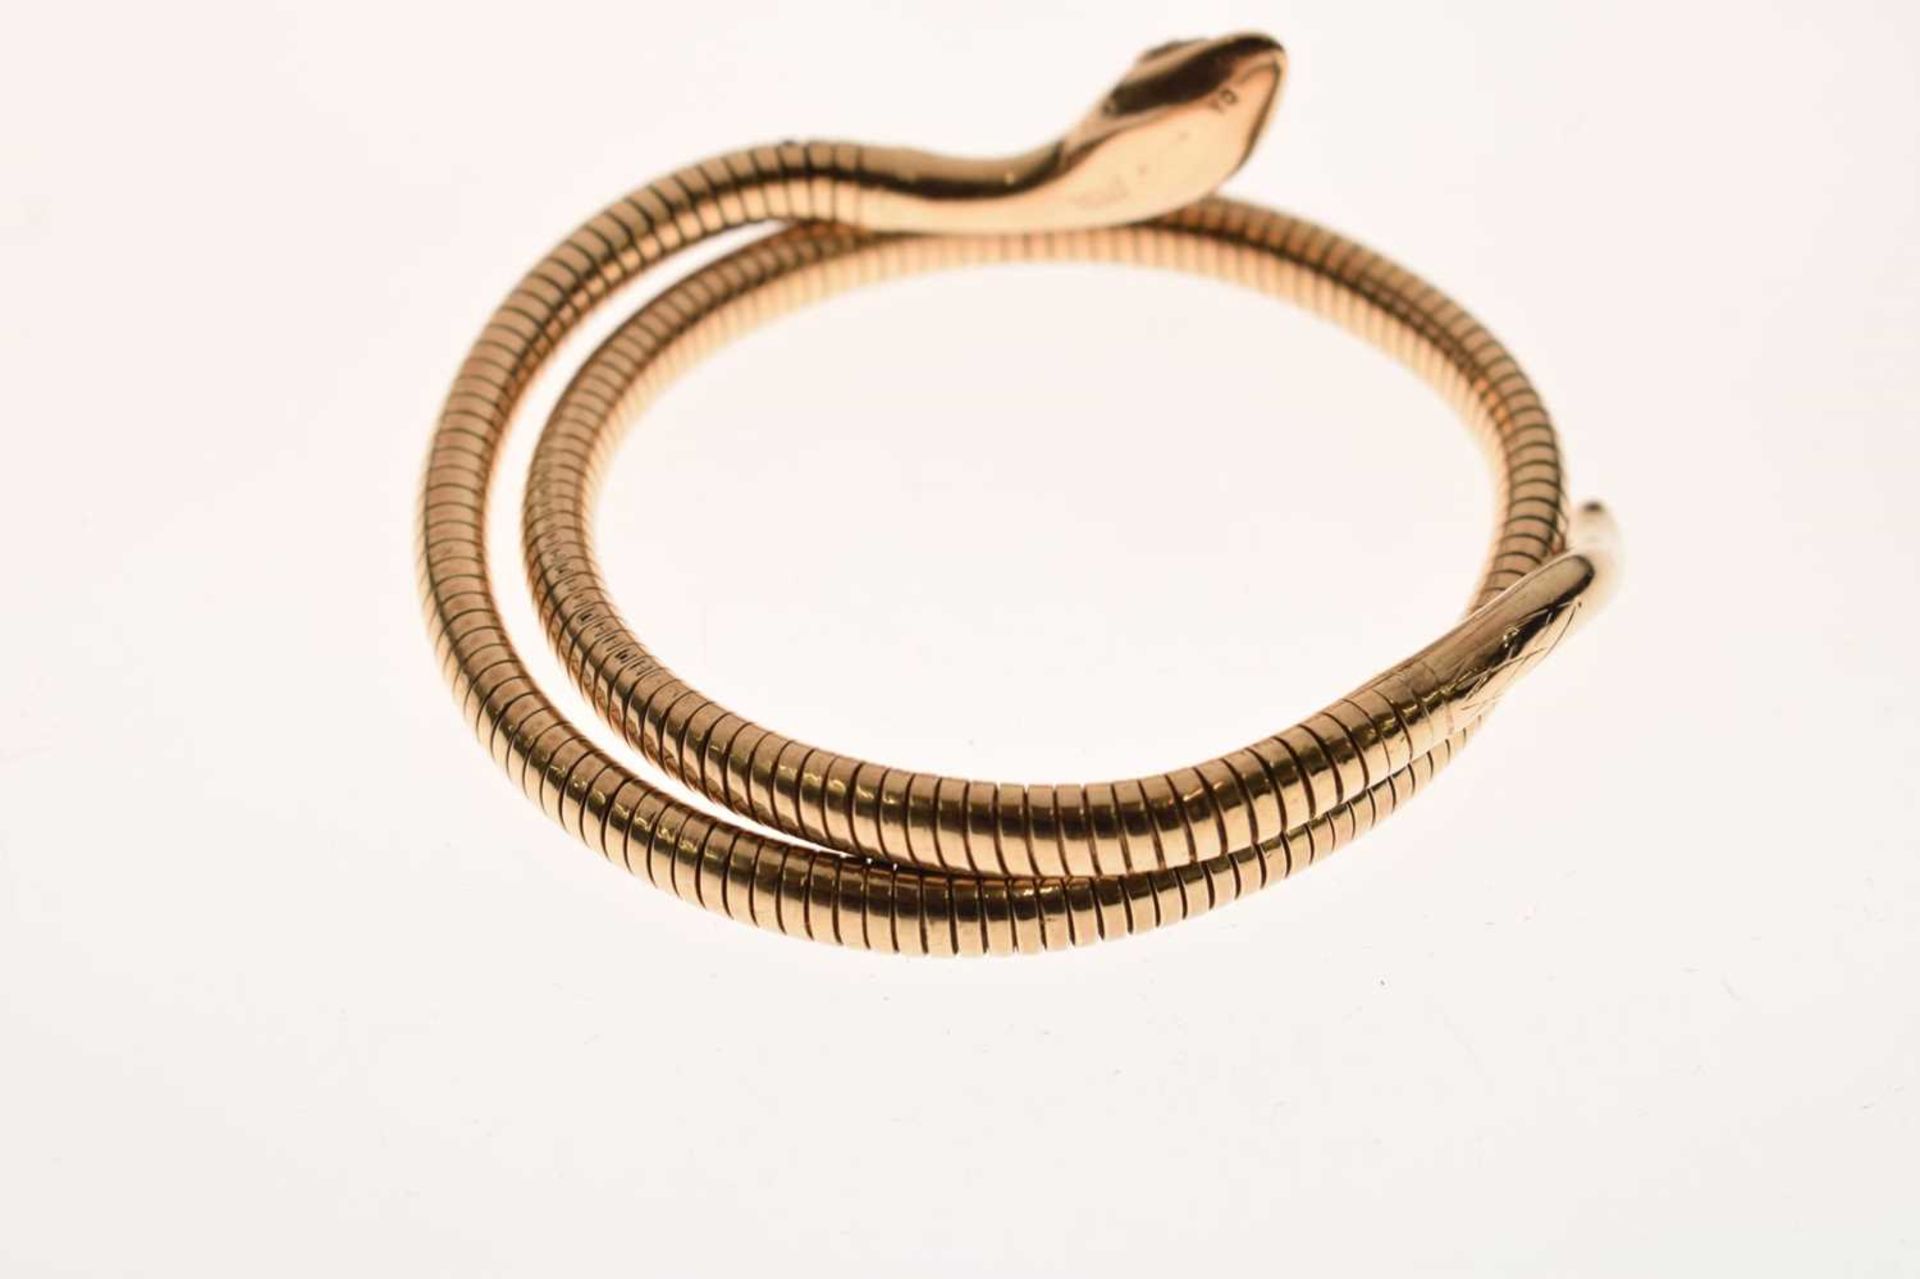 9ct gold and steel spring snake bracelet - Image 2 of 8